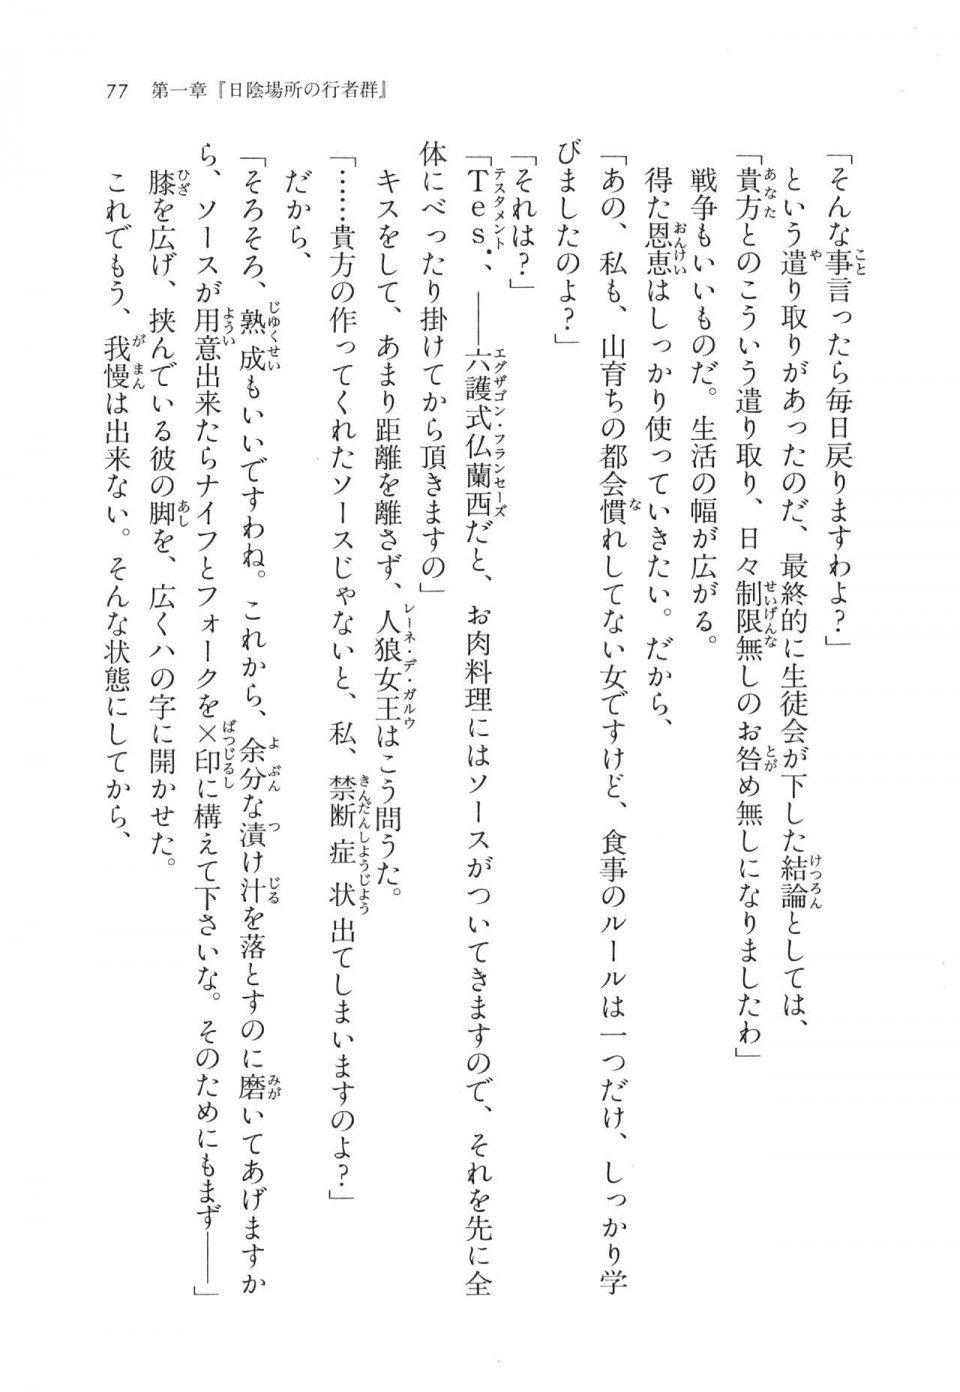 Kyoukai Senjou no Horizon LN Vol 11(5A) - Photo #77